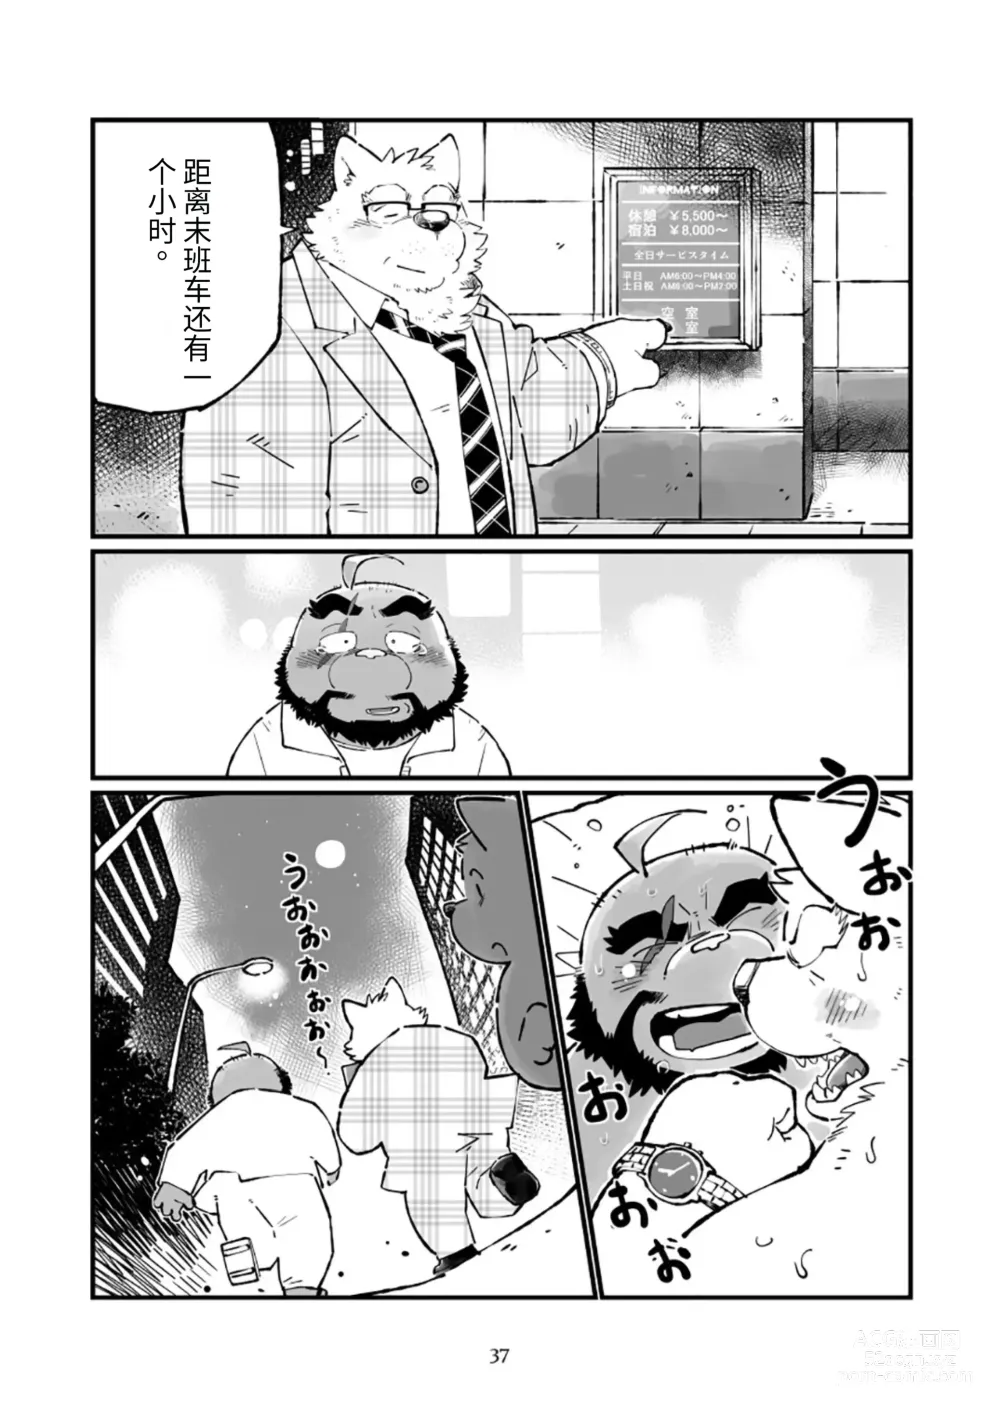 Page 37 of doujinshi 狗津原细见